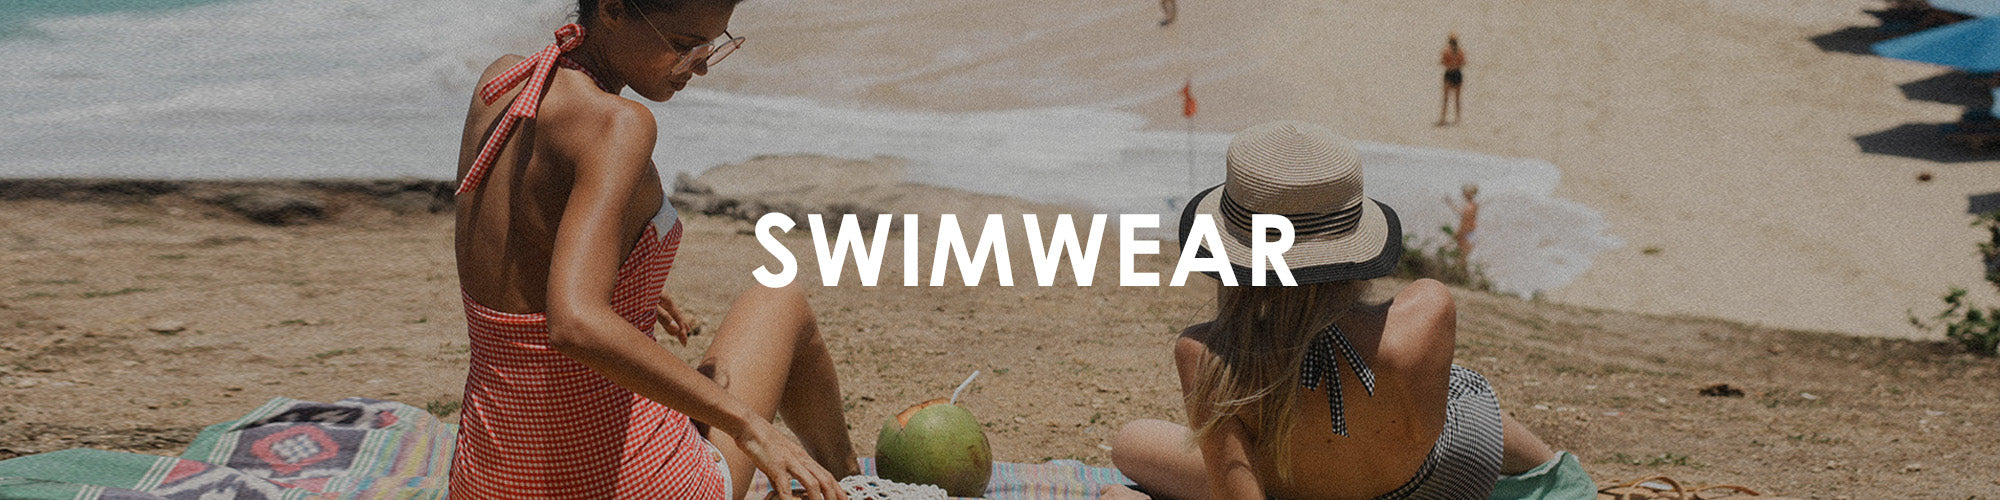 Swimwear for Women